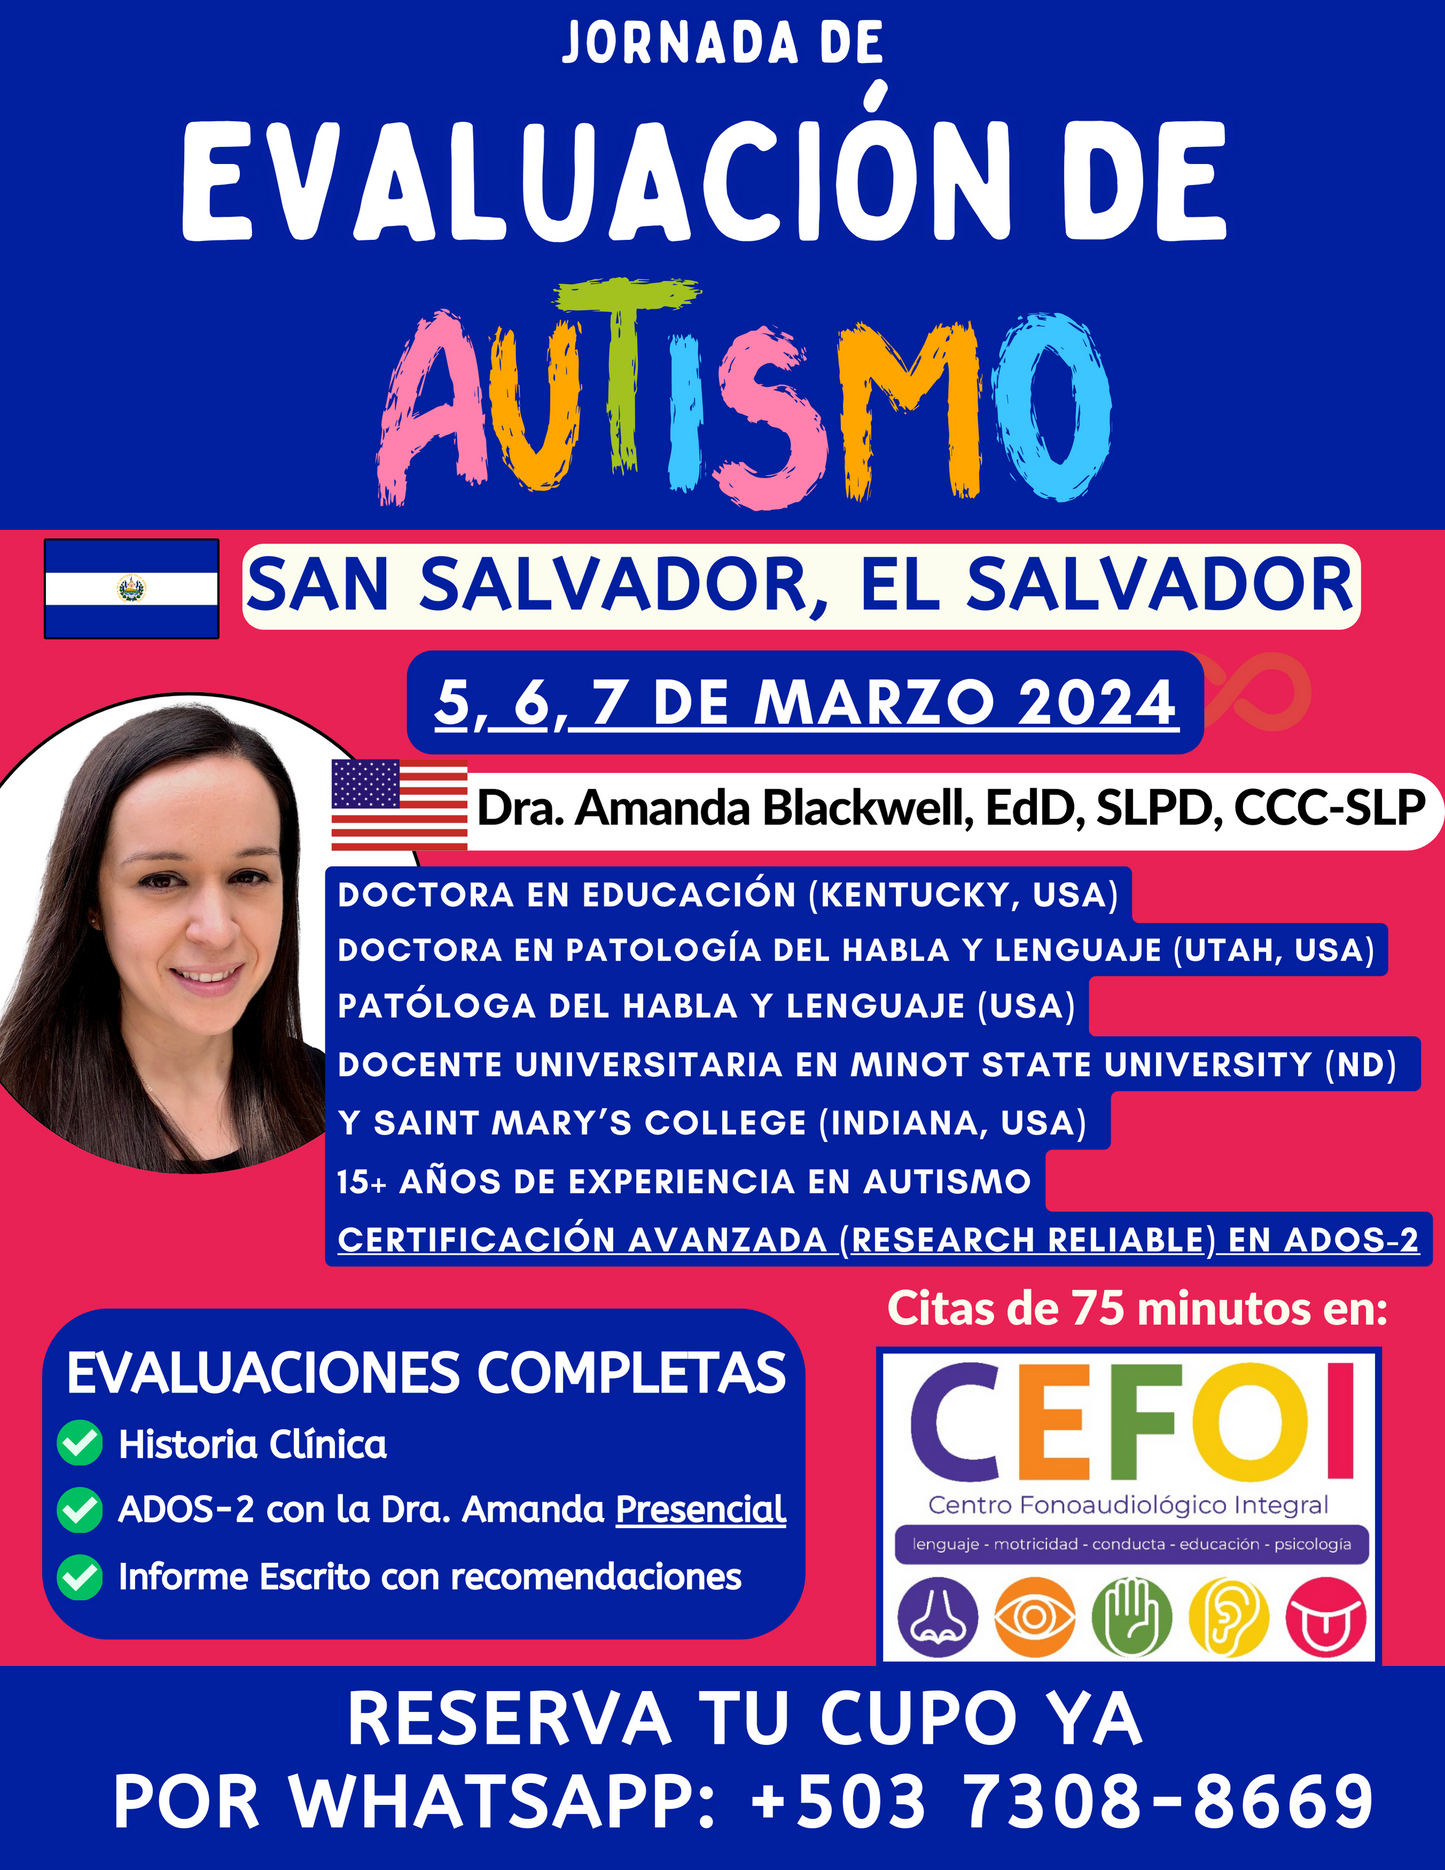 San Salvador Evaluación de Autismo: Un solo pago